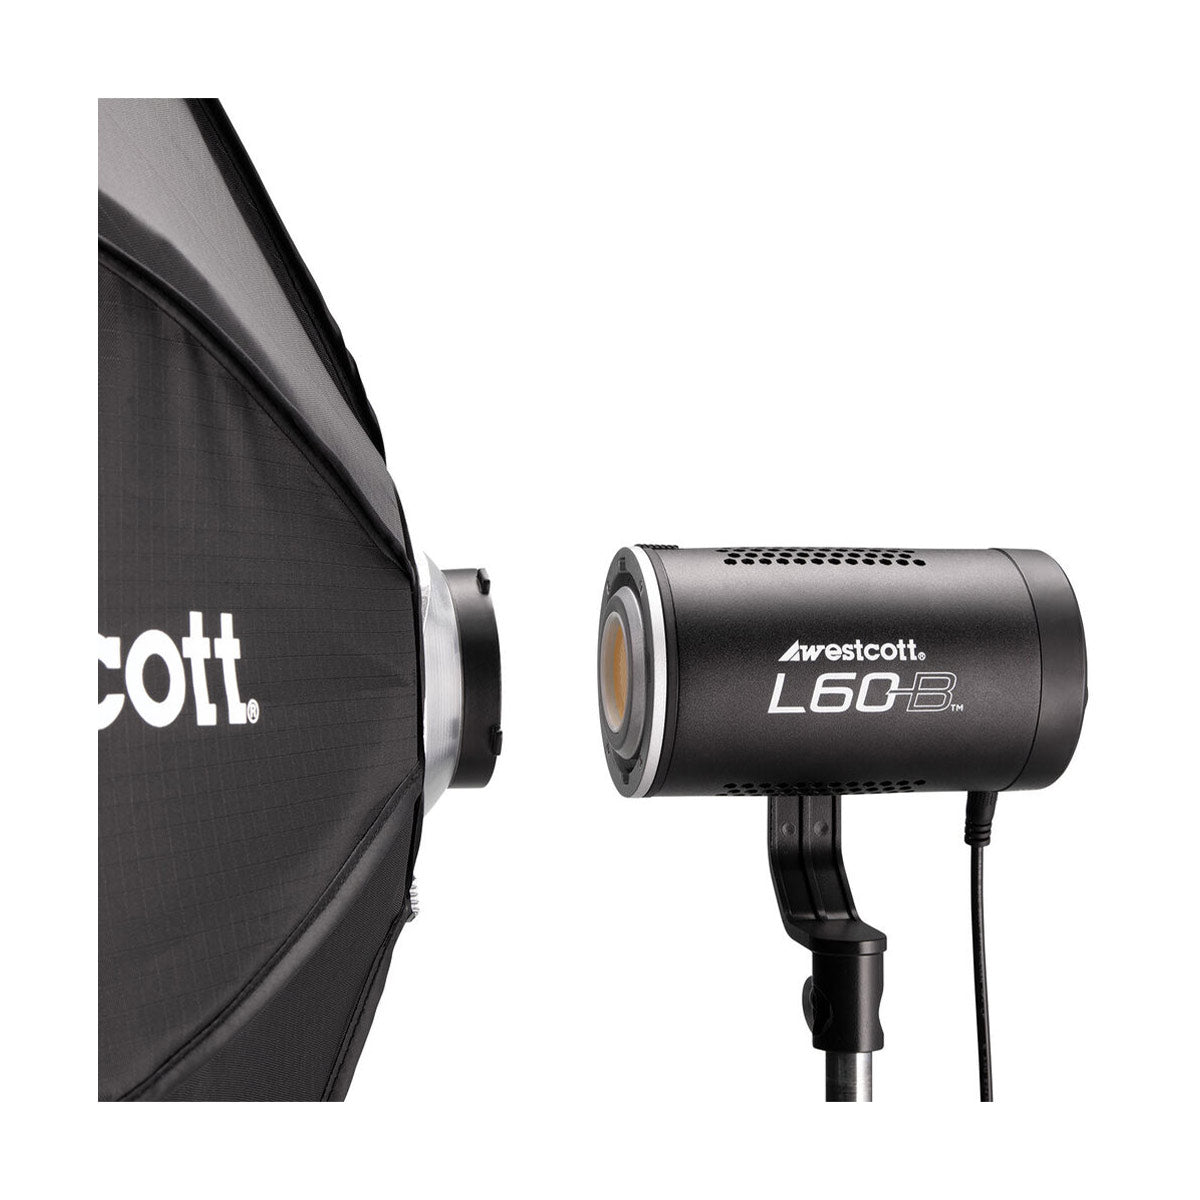 Westcott L60-B Bi-Color COB LED 1-Light Backpack Kit